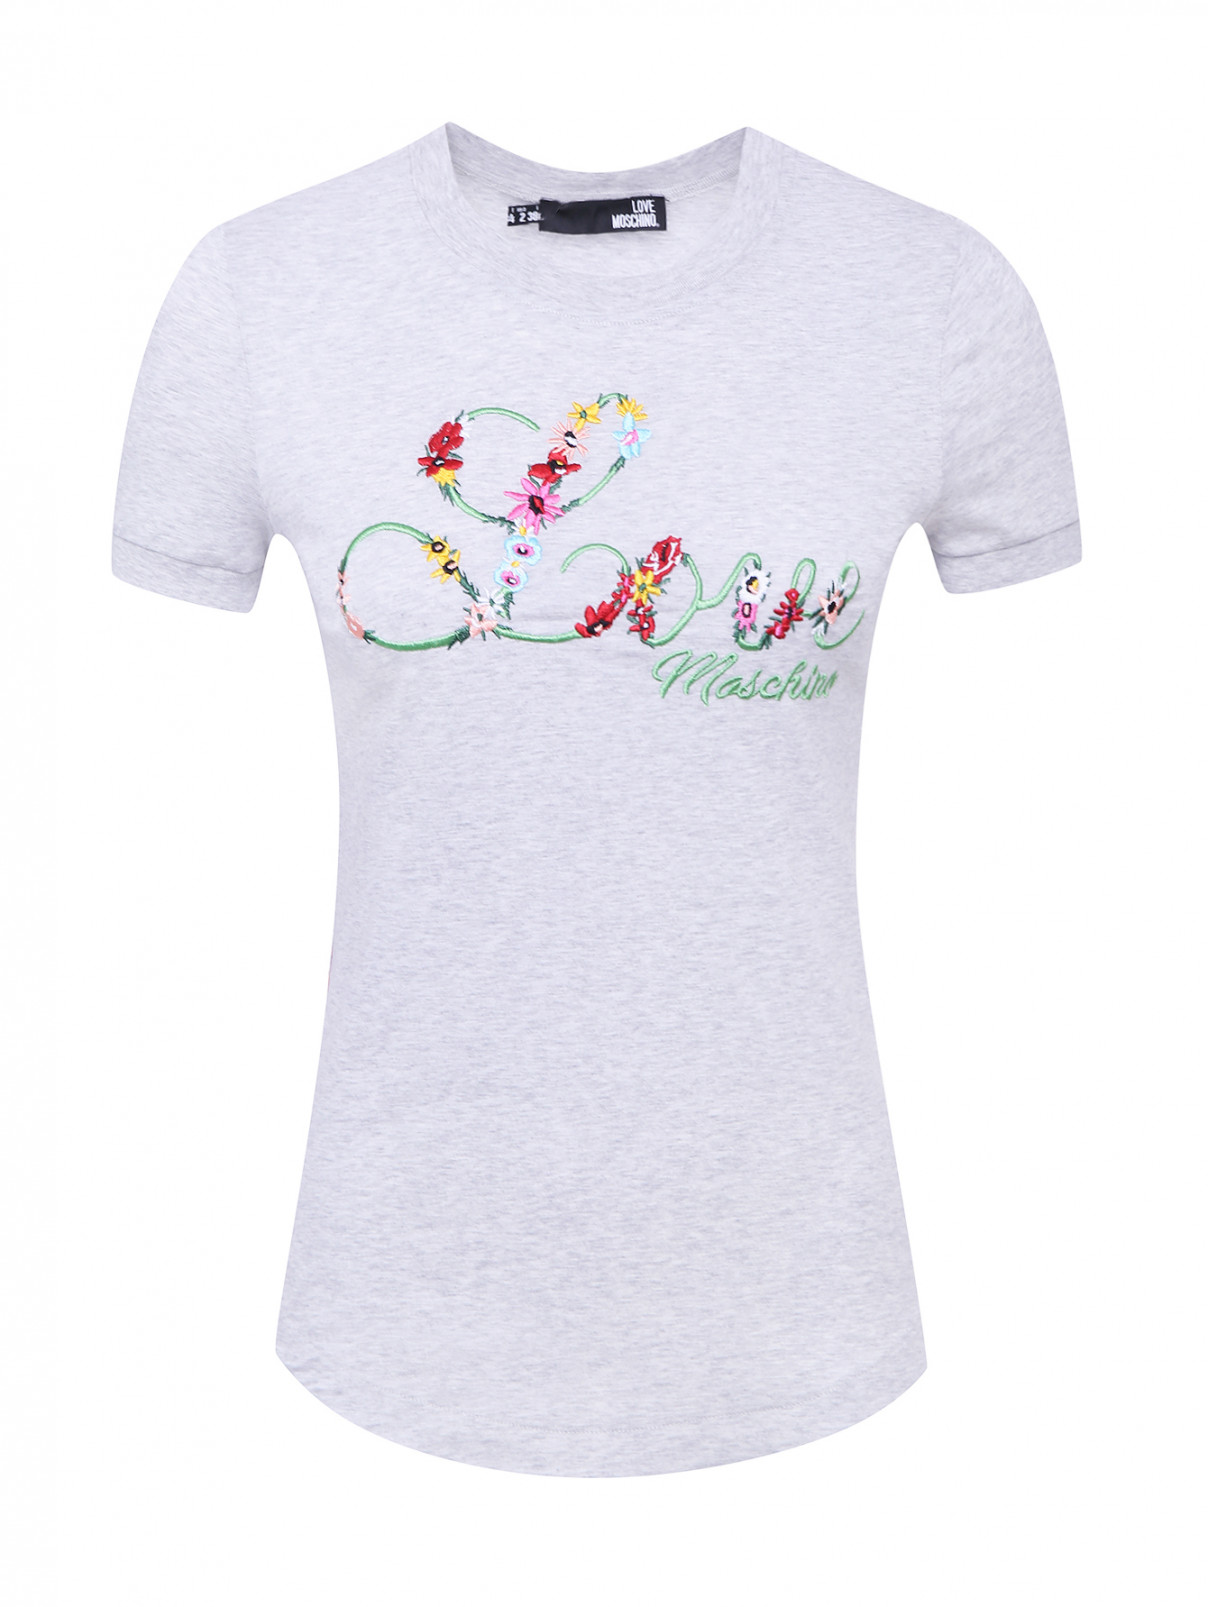 Трикотажная футболка с вышивкой Love Moschino  –  Общий вид  – Цвет:  Серый